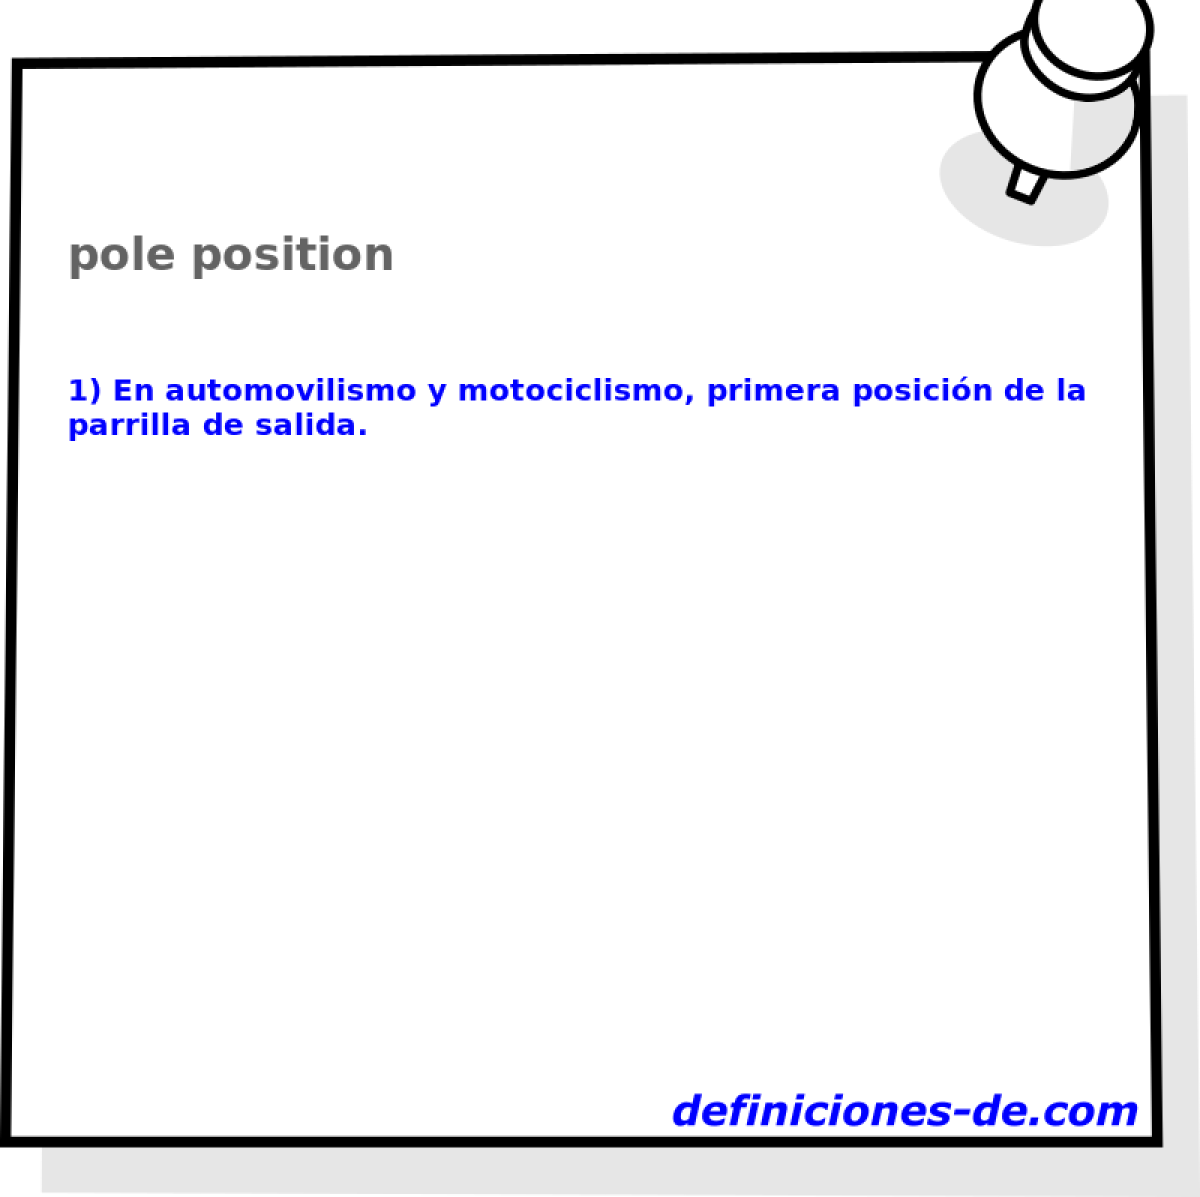 pole position 